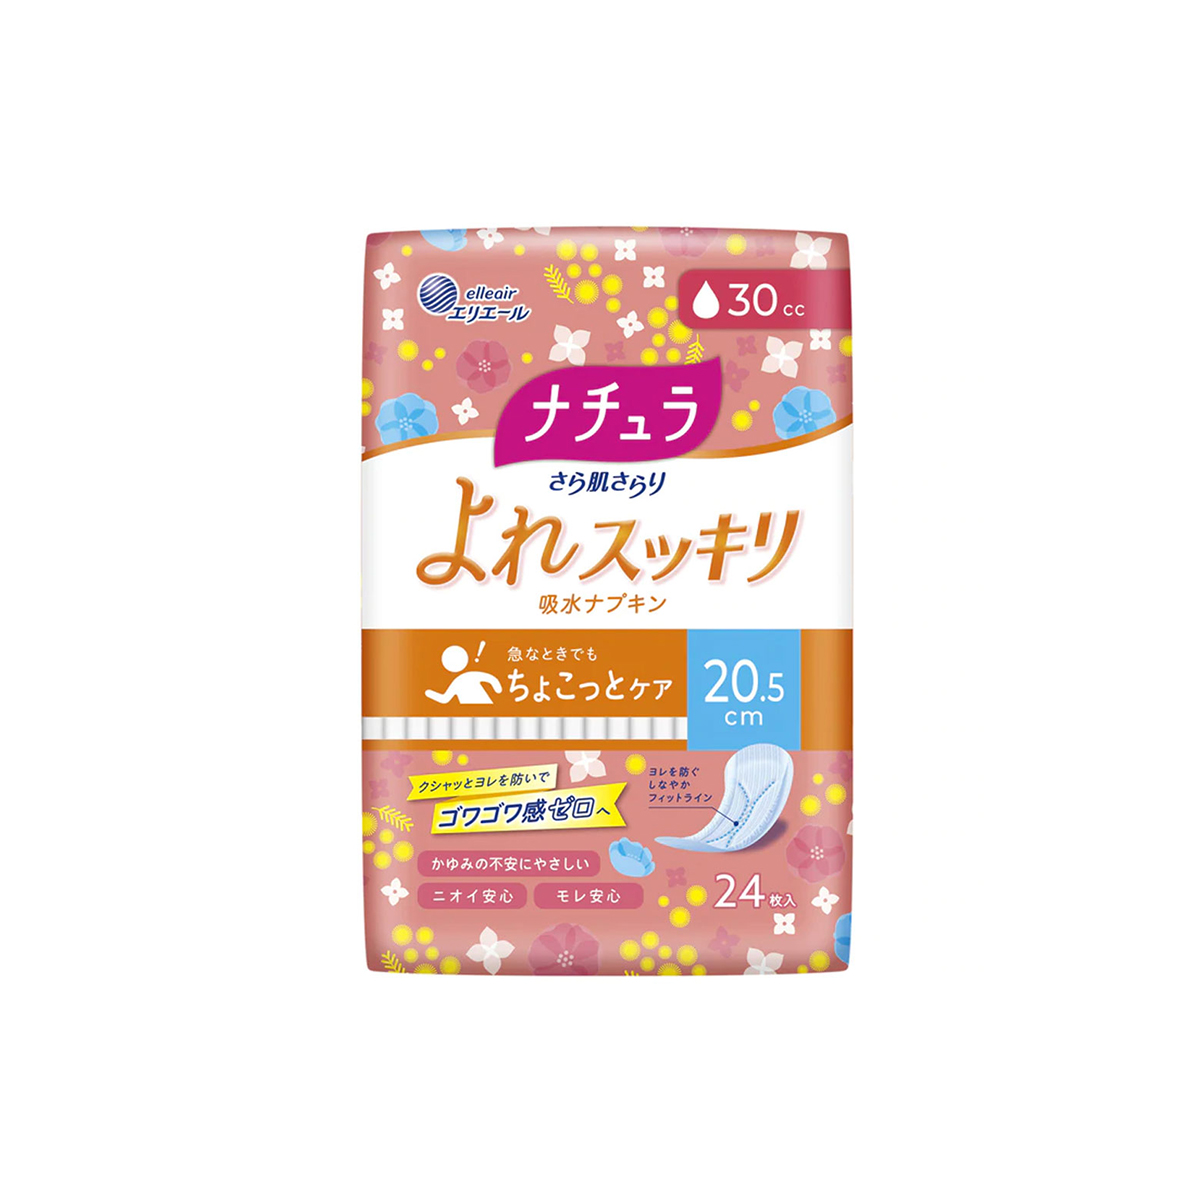 大王製紙 NATURA 娜舒雅 Daio Paper Natura慢性皮膚清爽吸水餐巾20.5厘米30cc（24件）